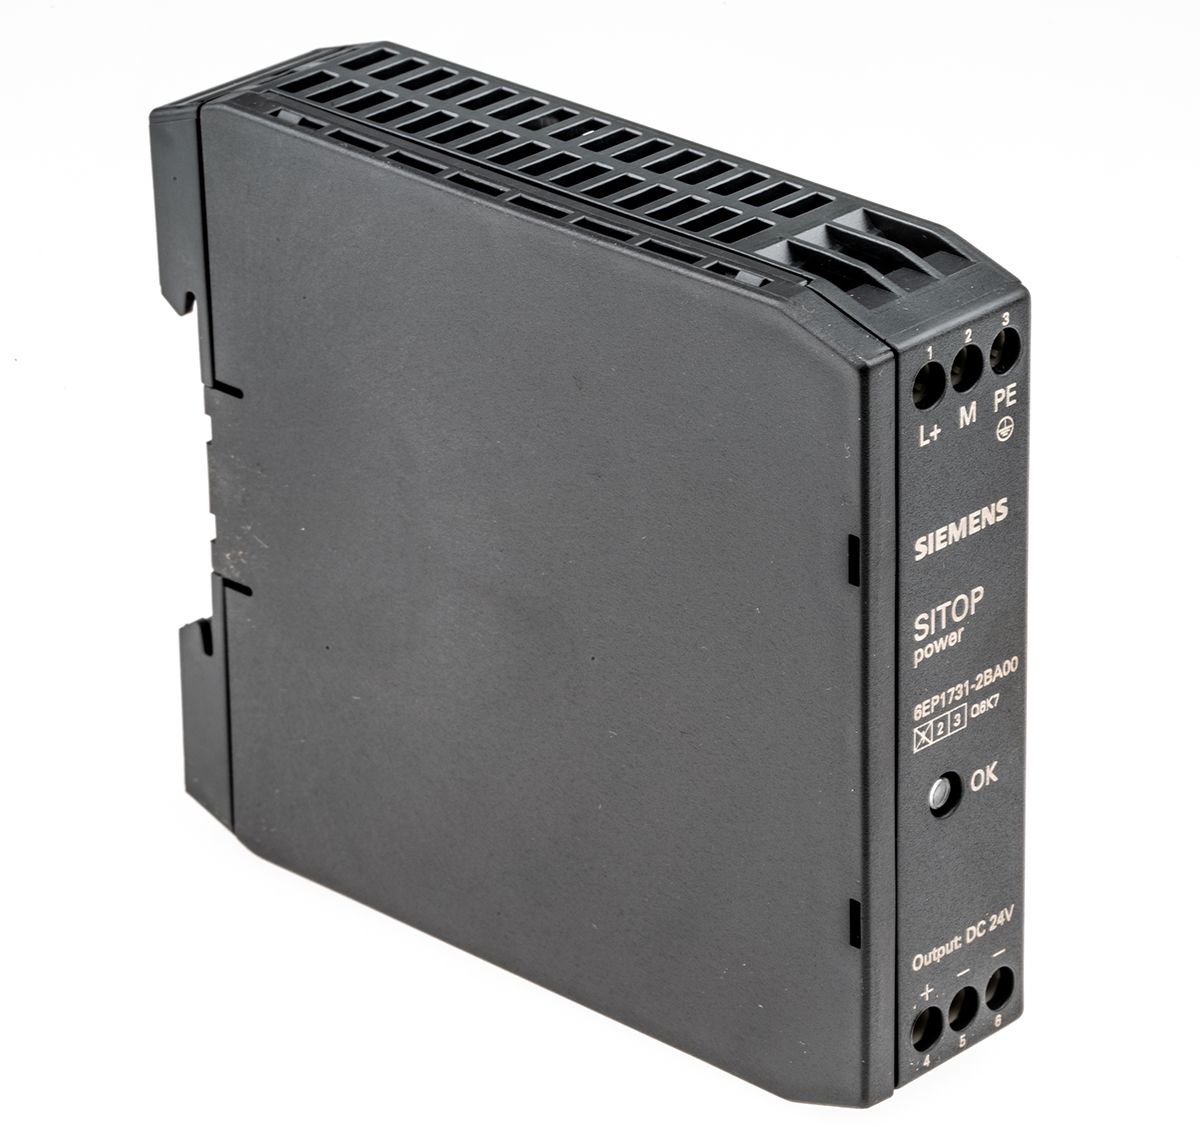 Siemens SITOP POWER Switch Mode DIN Rail Power Supply 30 → 187V ac Input, 24V dc Output, 370mA 9W